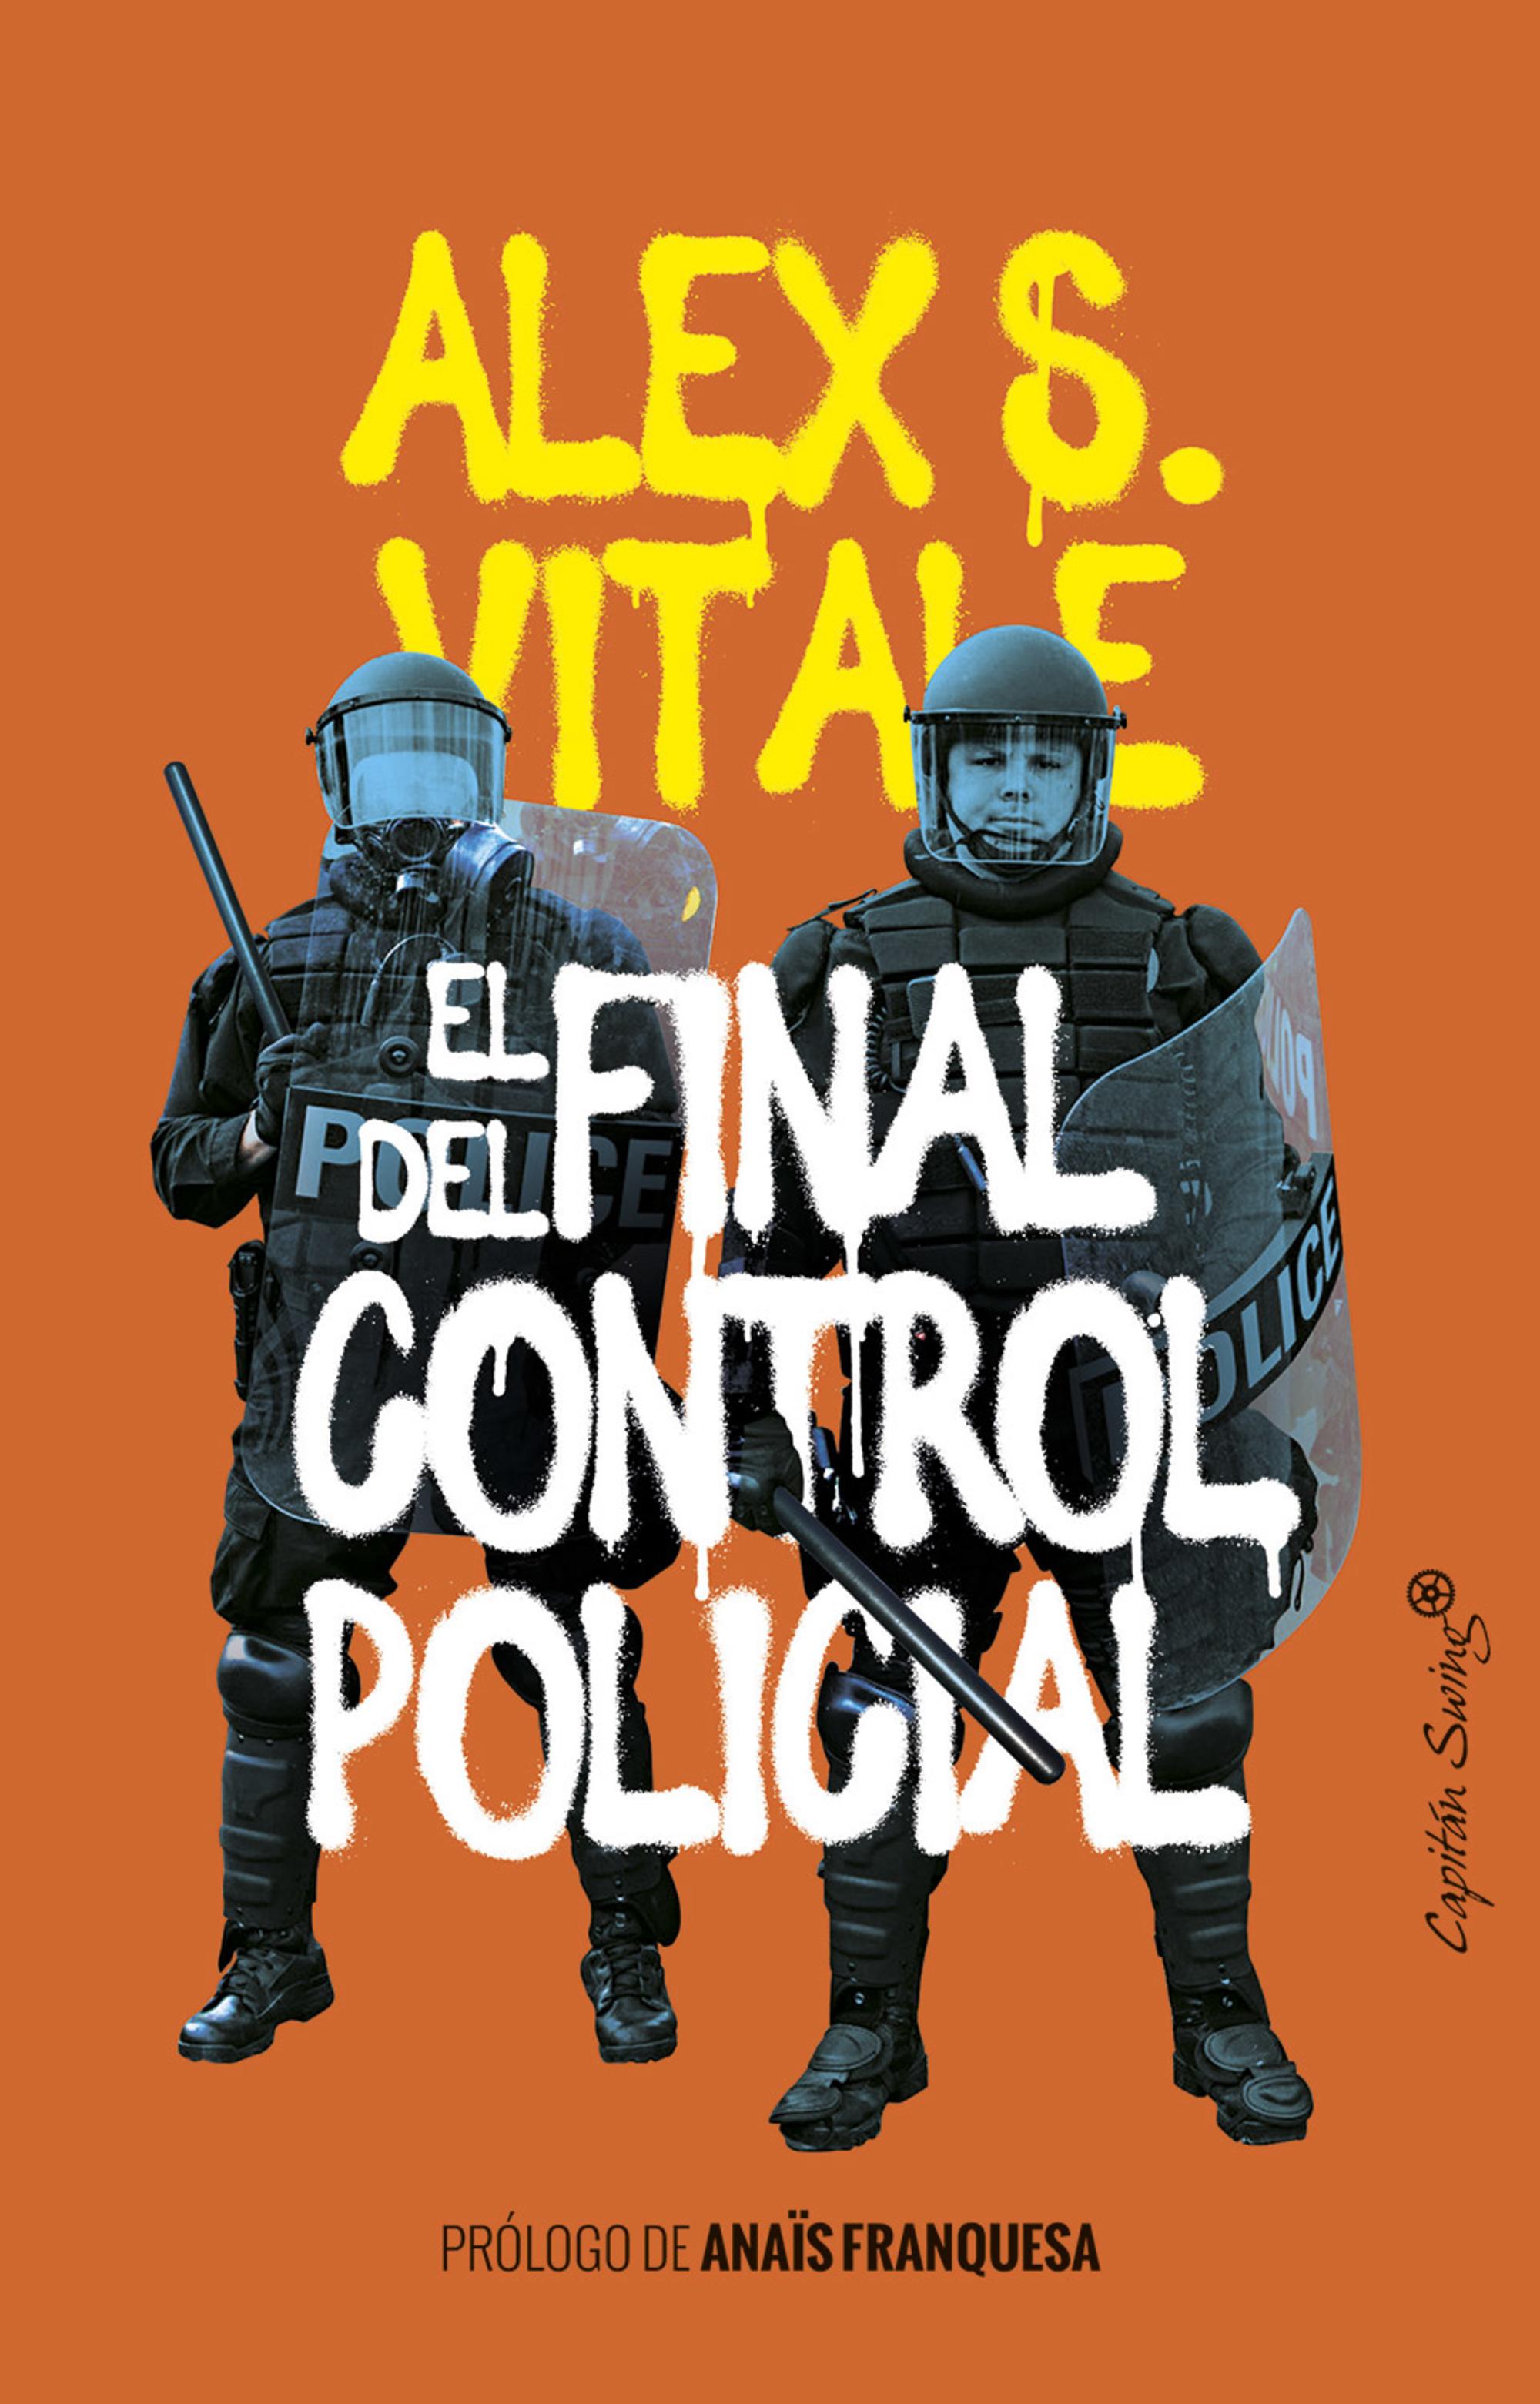 El fin del control policial